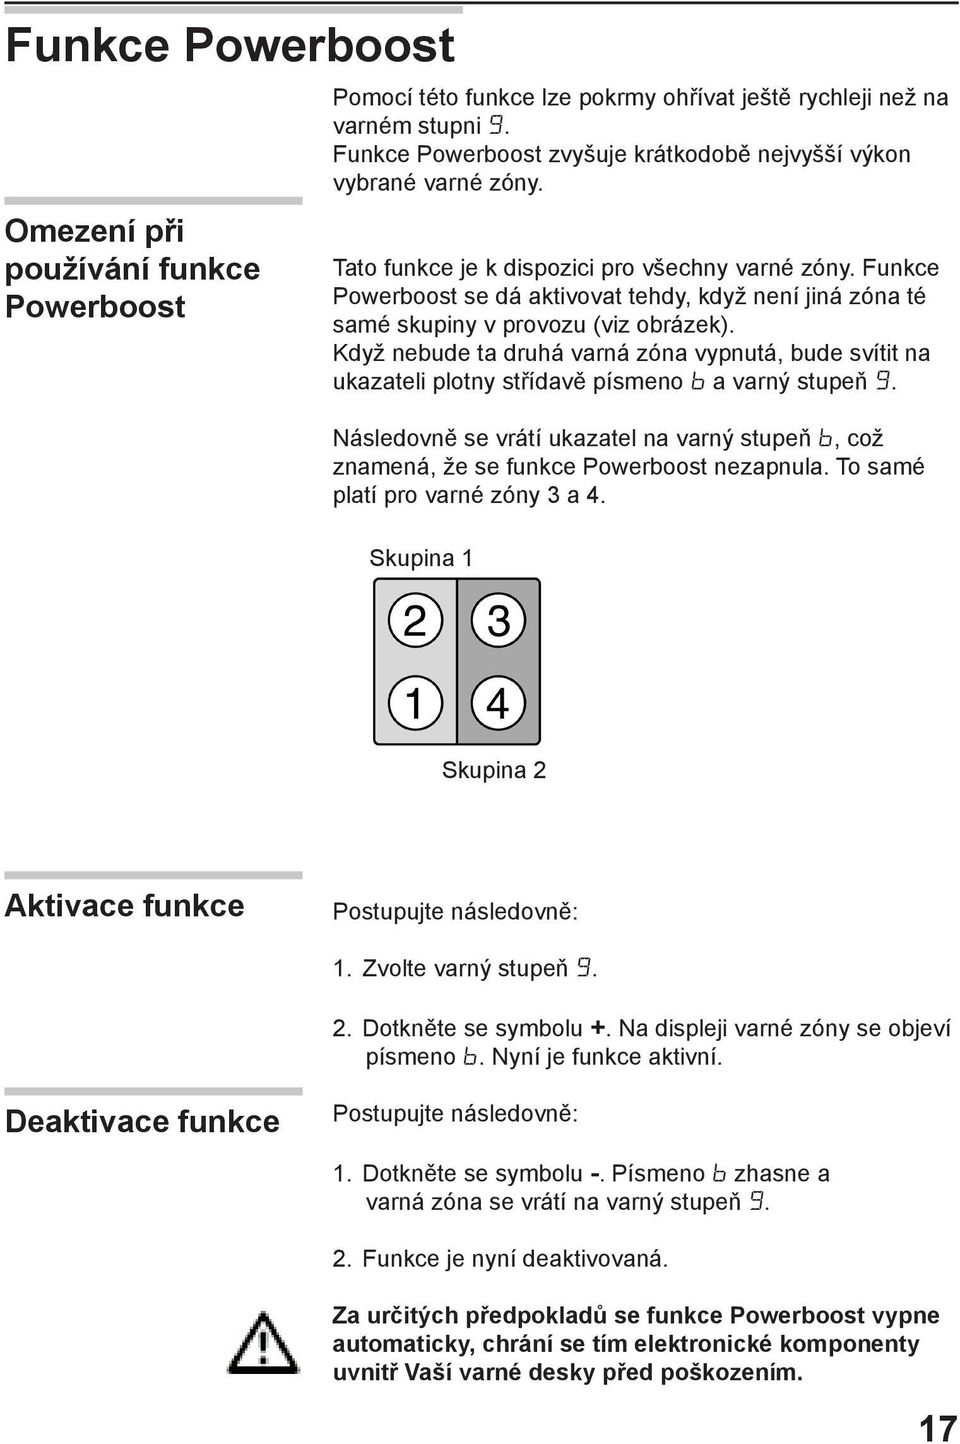 Funkce Powerboost se dá aktivovat tehdy, když není jiná zóna té samé skupiny v provozu (viz obrázek).